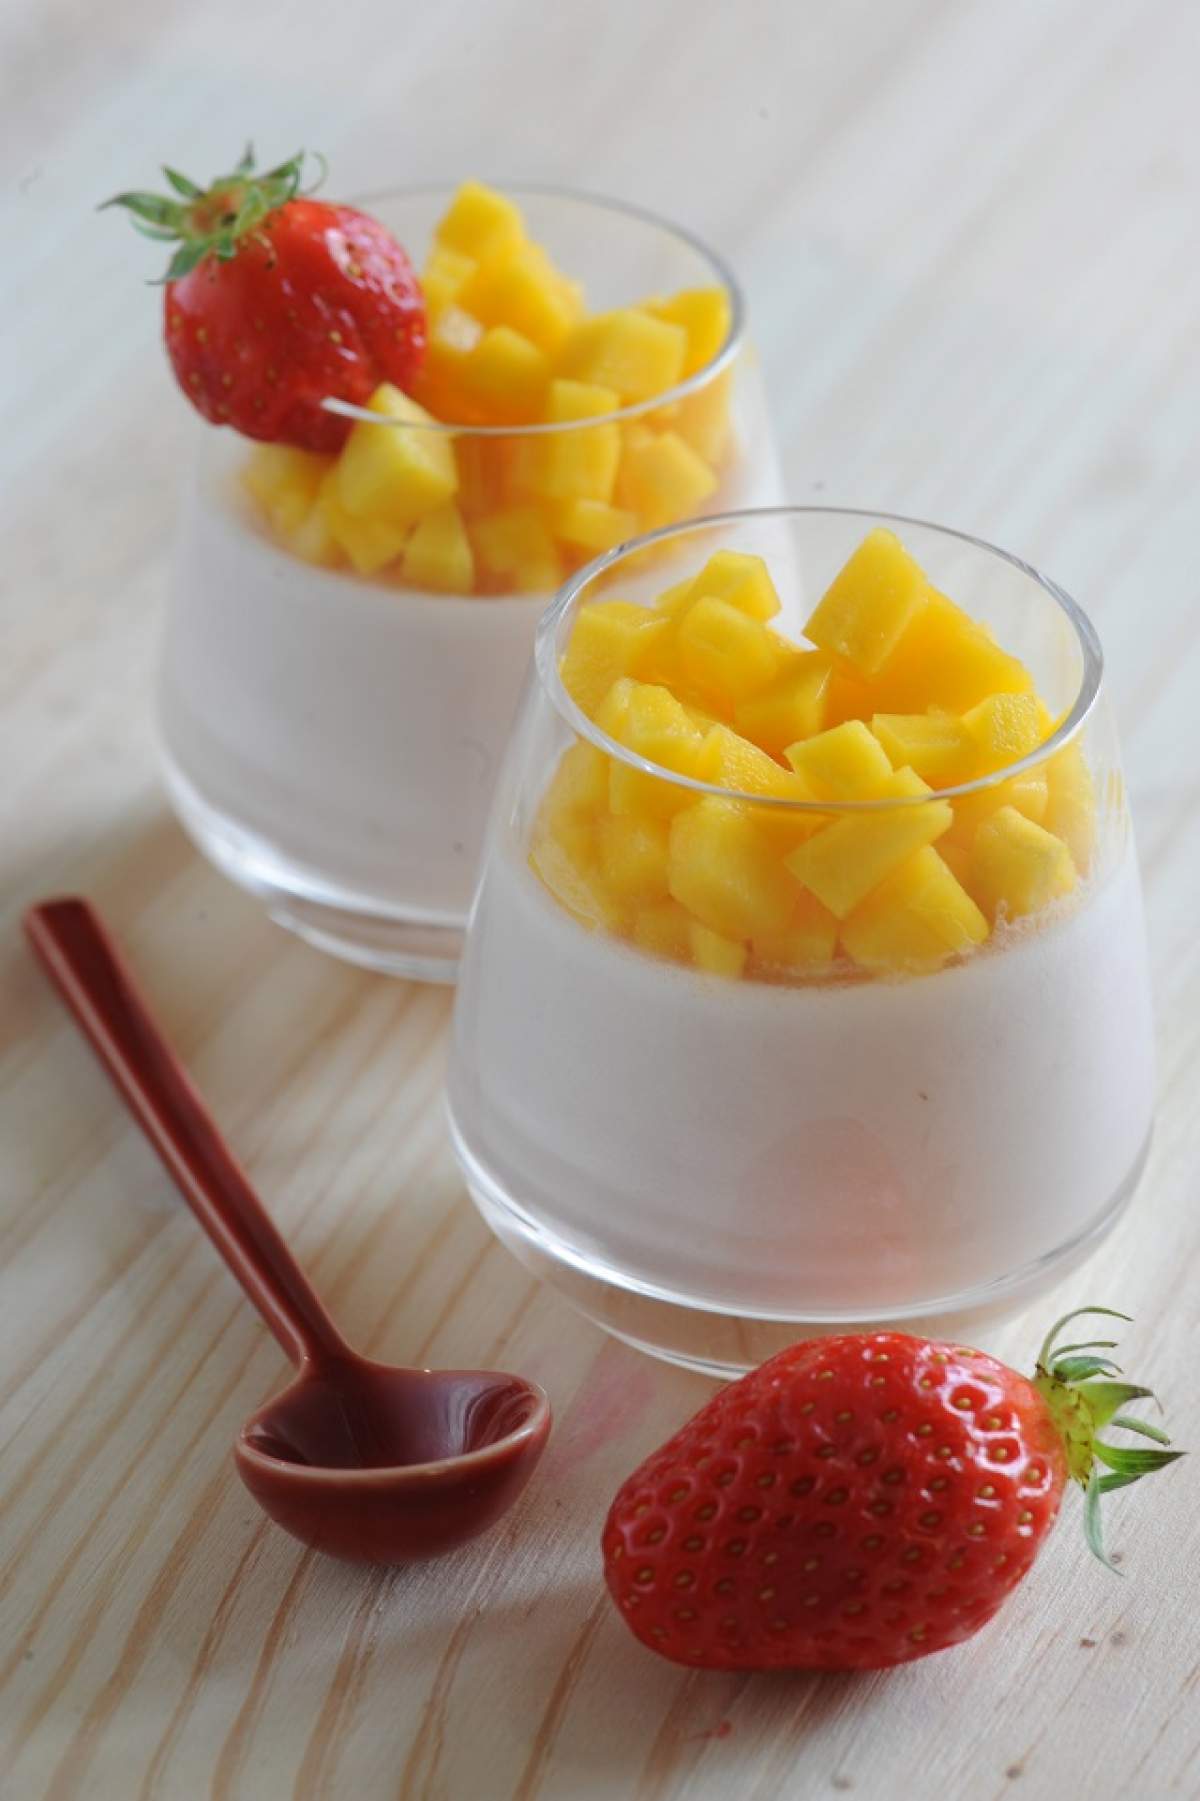 REŢETA ZILEI - MIERCURI / Panna cotta cu piure de mango, un desert răcoros, gata în doar câteva minute